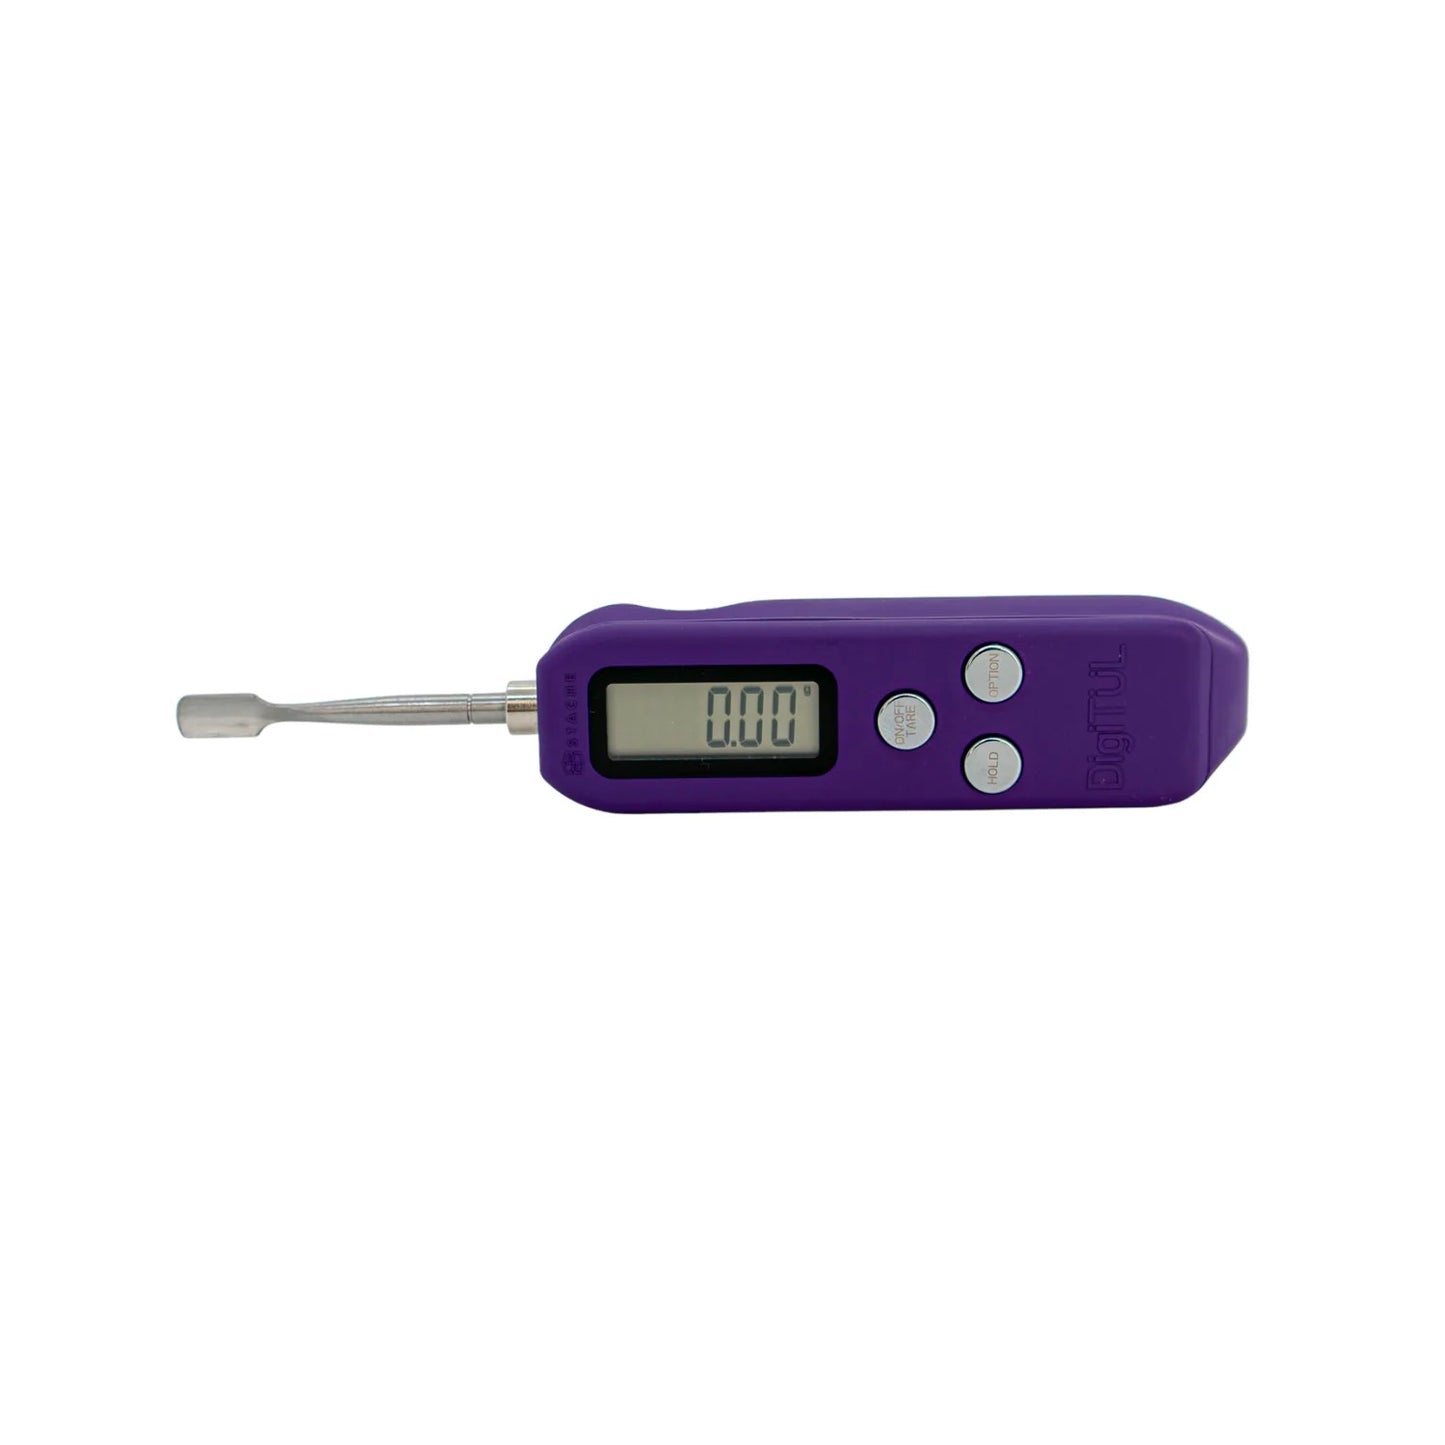 Stache DigiTul   digital scale tool. - Purple